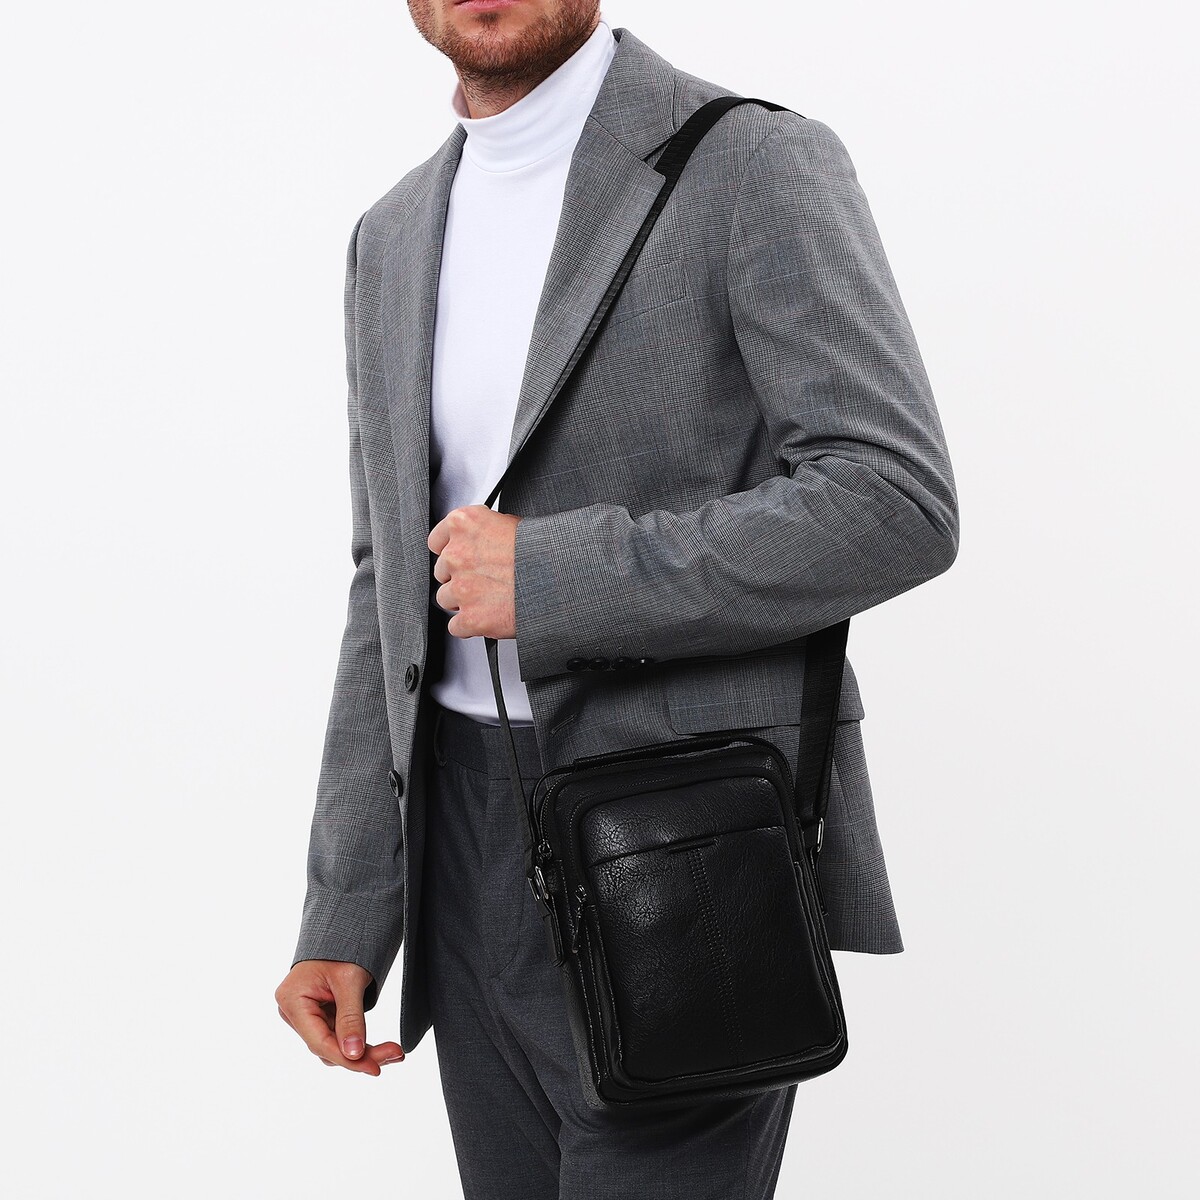 Сумка мужская на молнии, 2 наружных кармана, длинный ремень, цвет черный No brand, размер средний 04879255 планшет - фото 1